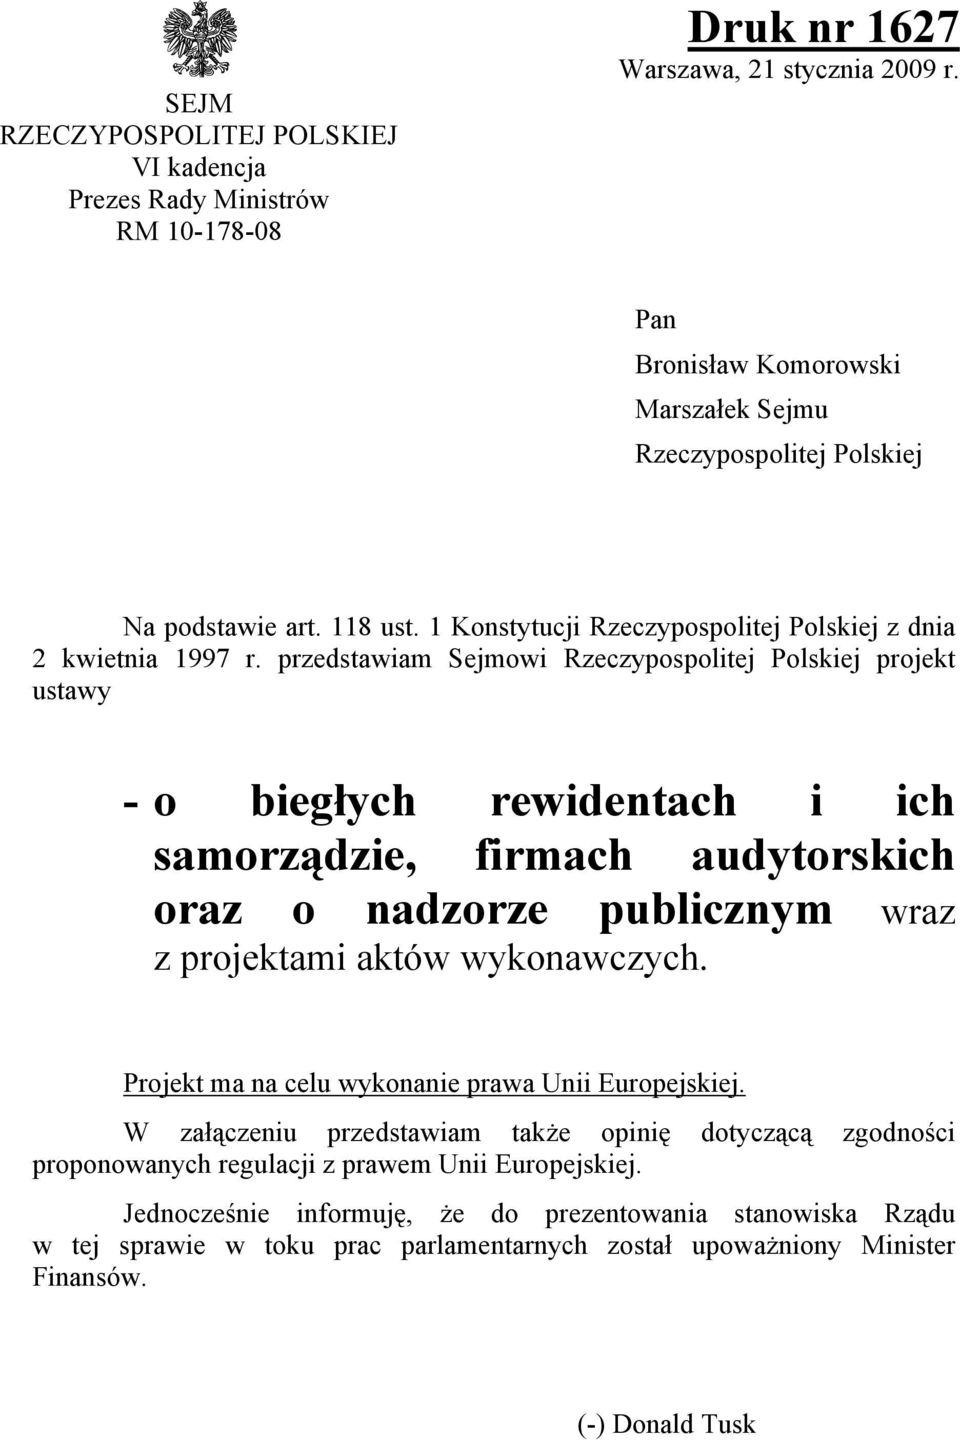 przedstawiam Sejmowi Rzeczypospolitej Polskiej projekt ustawy - o biegych rewidentach i ich samorządzie, firmach audytorskich oraz o nadzorze publicznym wraz z projektami aktw wykonawczych.